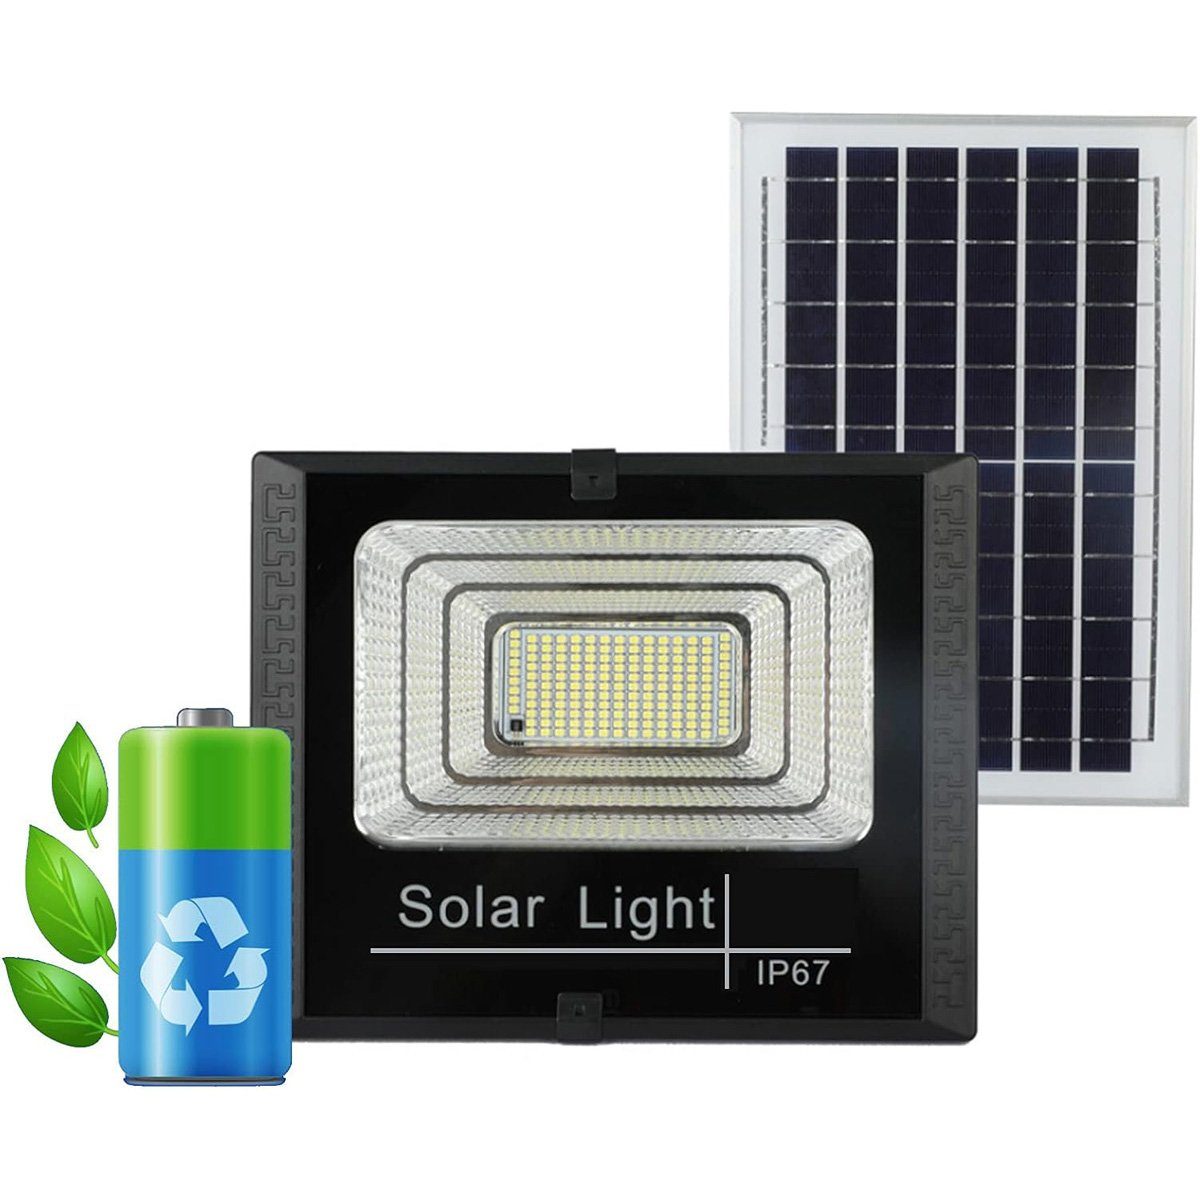 yozhiqu LED Gartenstrahler Intelligente Solarbeleuchtung, LED-Flutlicht mit Controller, C, Sensible Lichtsteuerung, 2 Beleuchtungsmodi, dimmbare Helligkeit